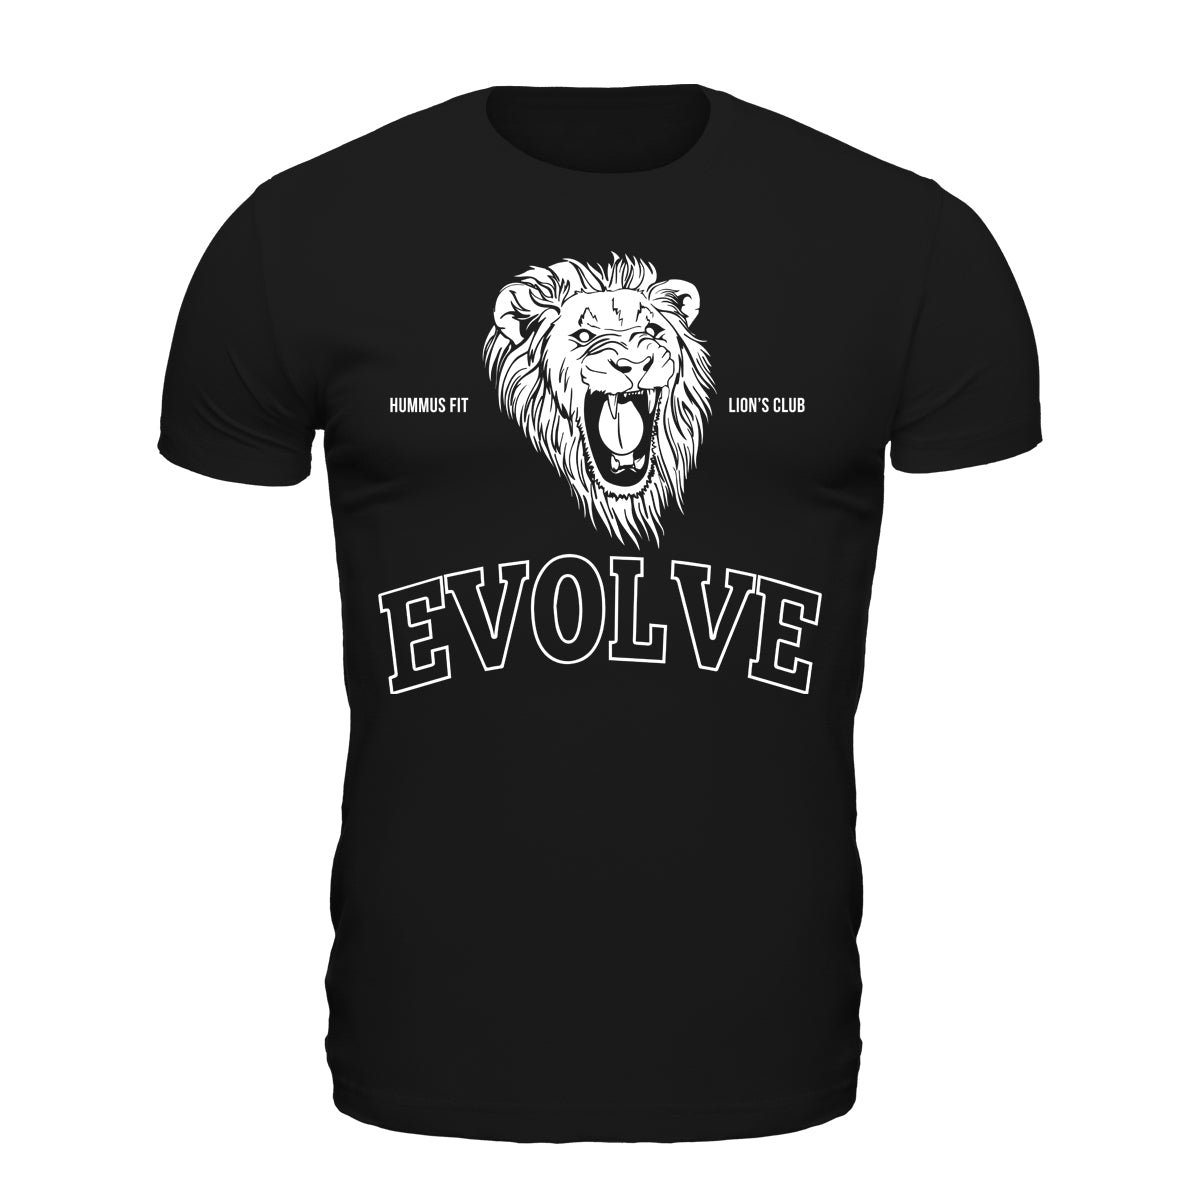 OG Evolve - Camiseta unisex Softstyle (Negro)